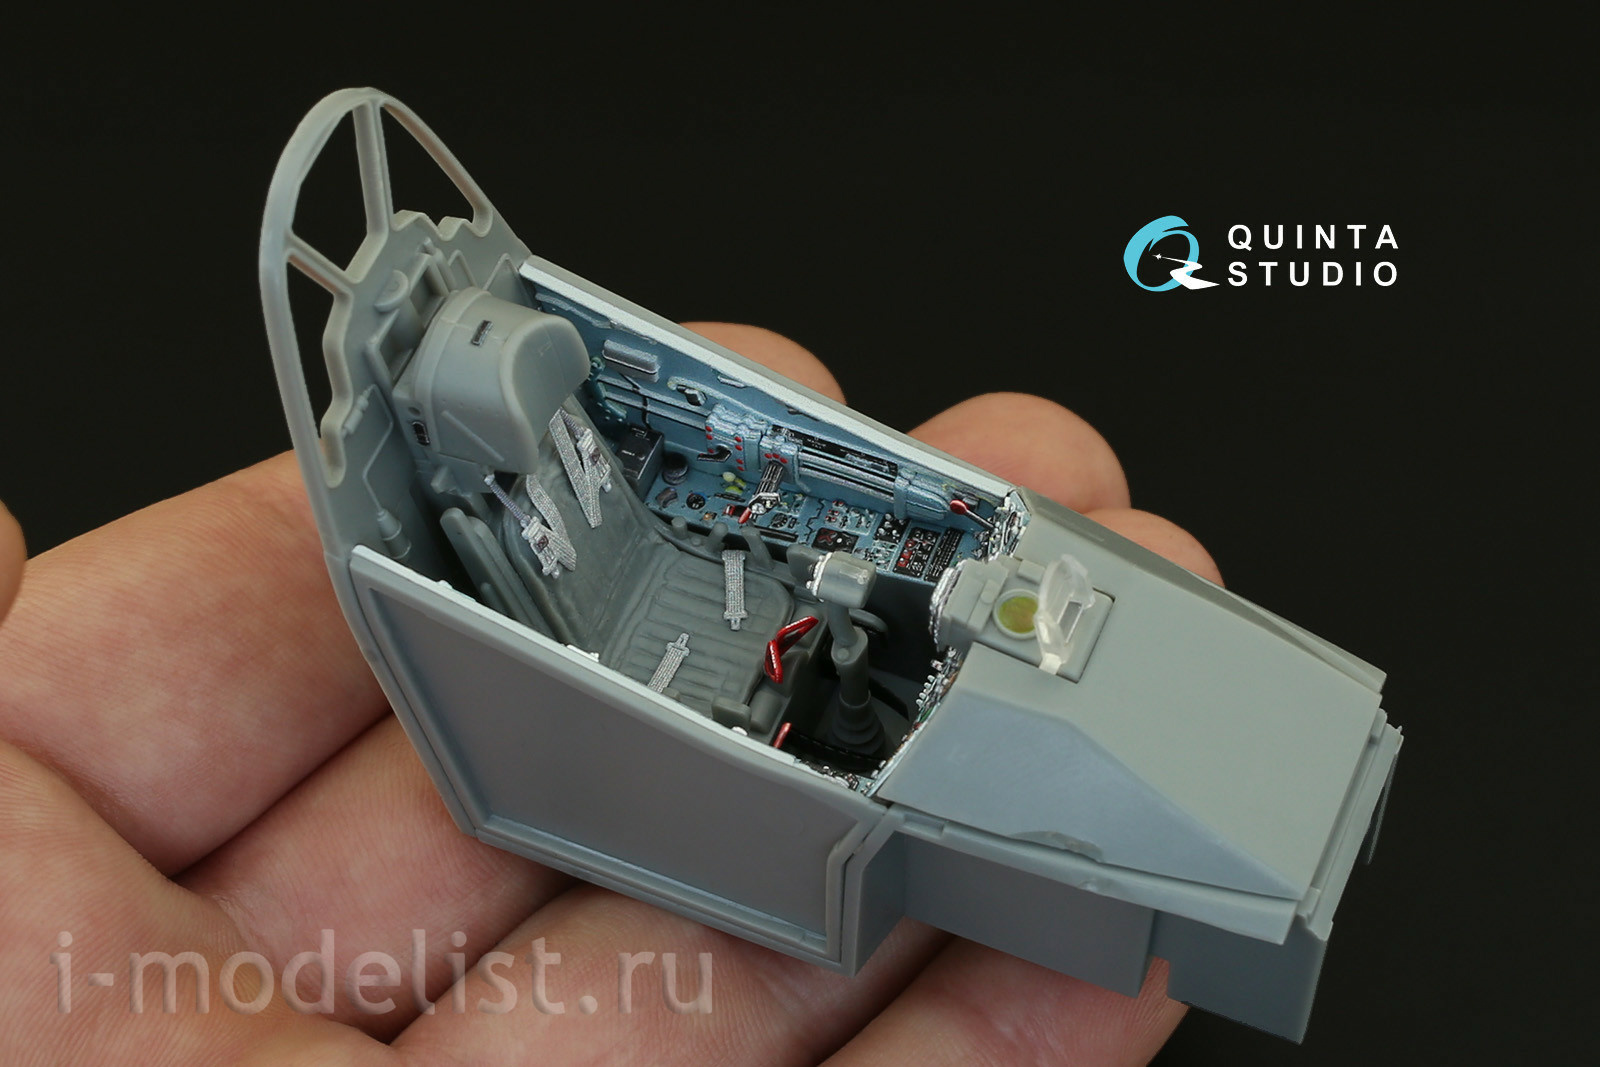 QD32006 Quinta Studio 1/32 3D Декаль интерьера кабины Суххой-25УБ (для модели Trumpeter)